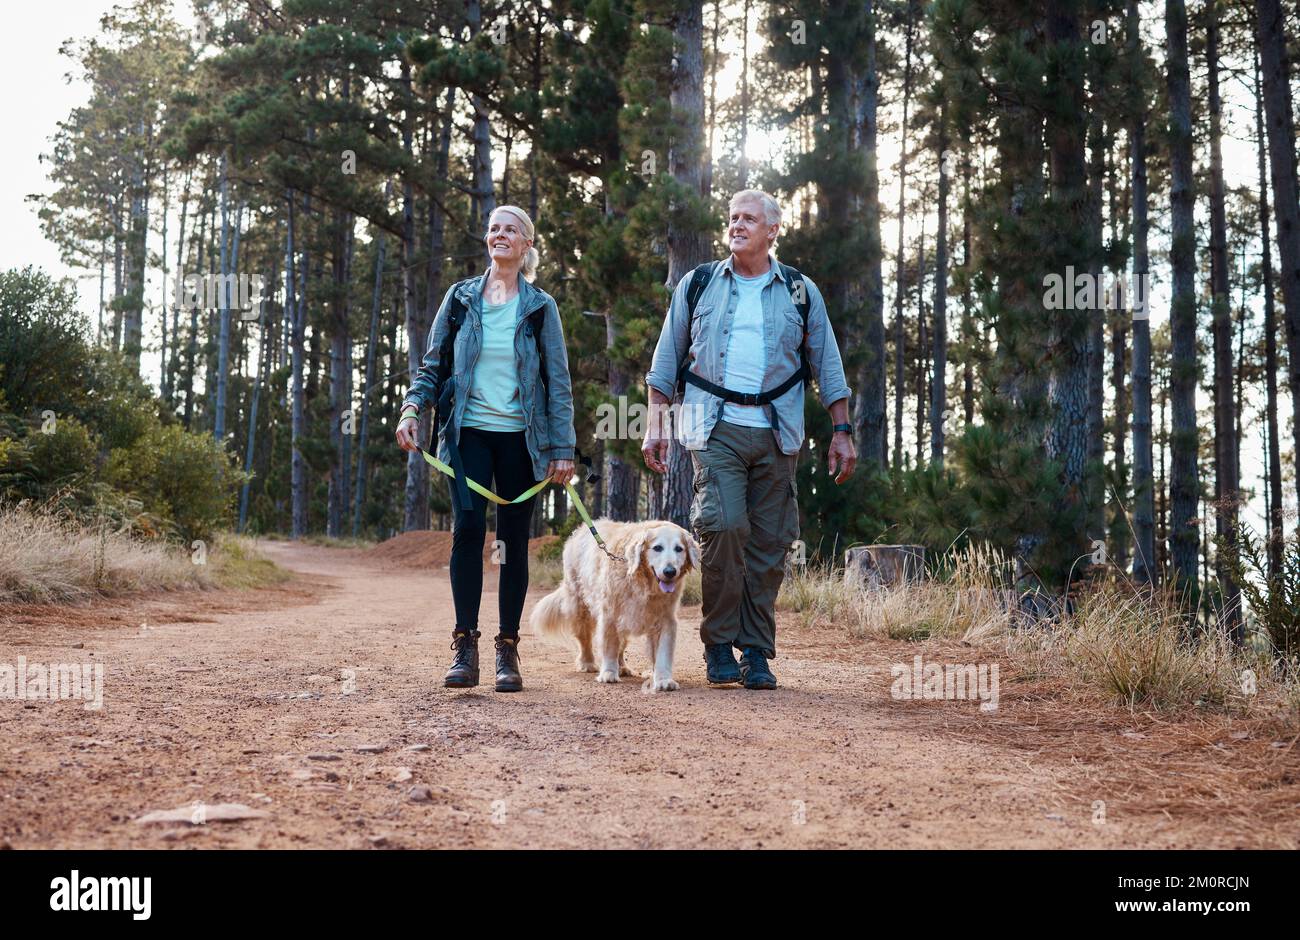 La randonnée est amusante et nous permet de rester actifs. un couple d'âge mûr et leur chien pour une randonnée ensemble. Banque D'Images